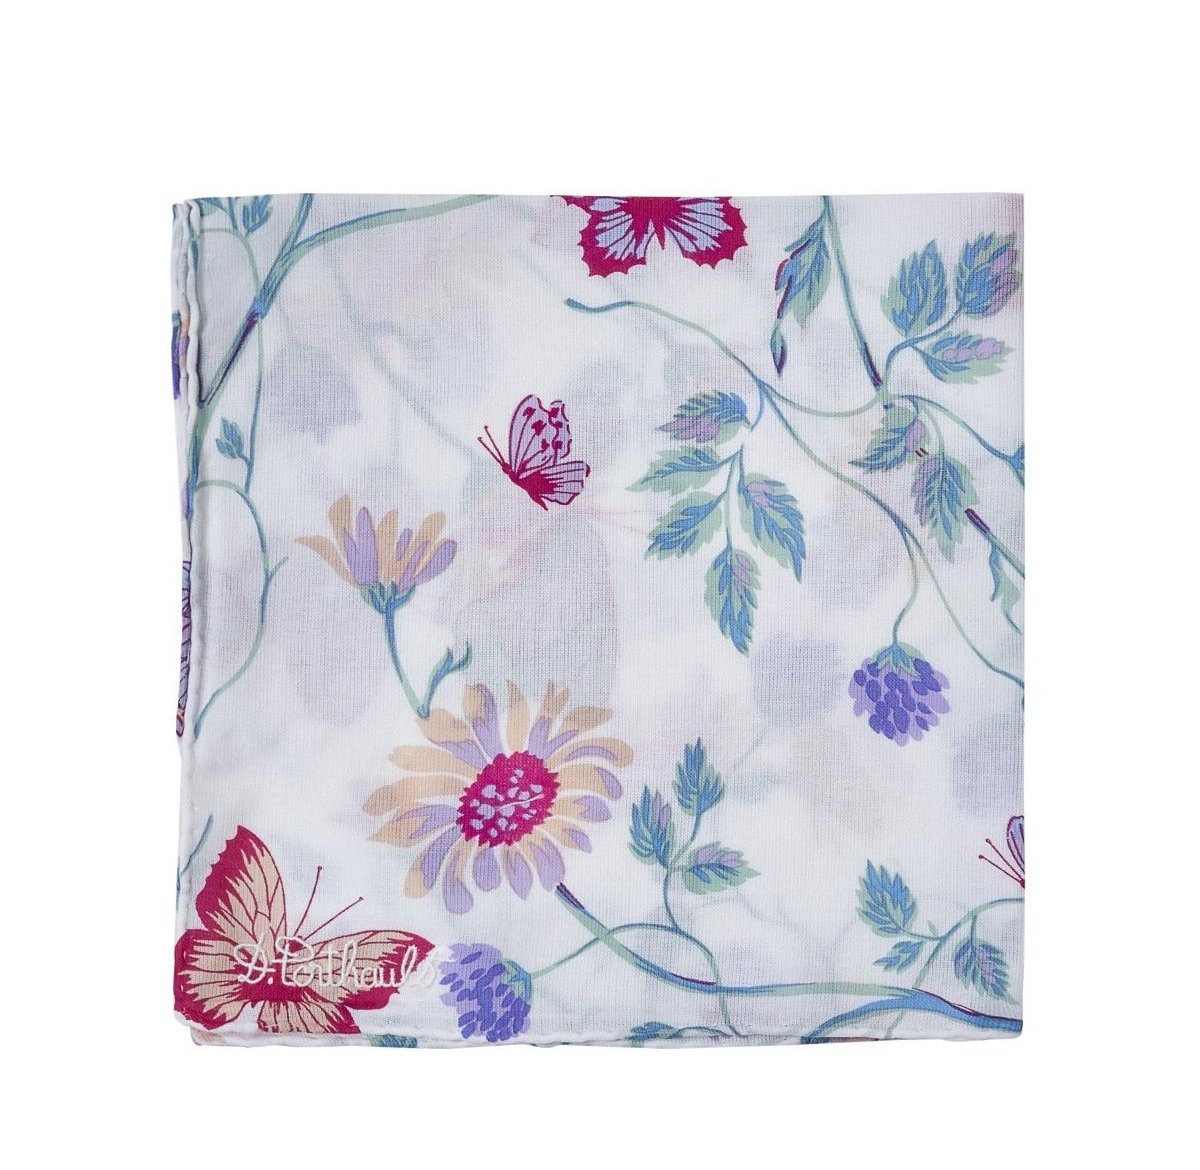 Printed Fleurs et Papillons Turquoise Handkerchief